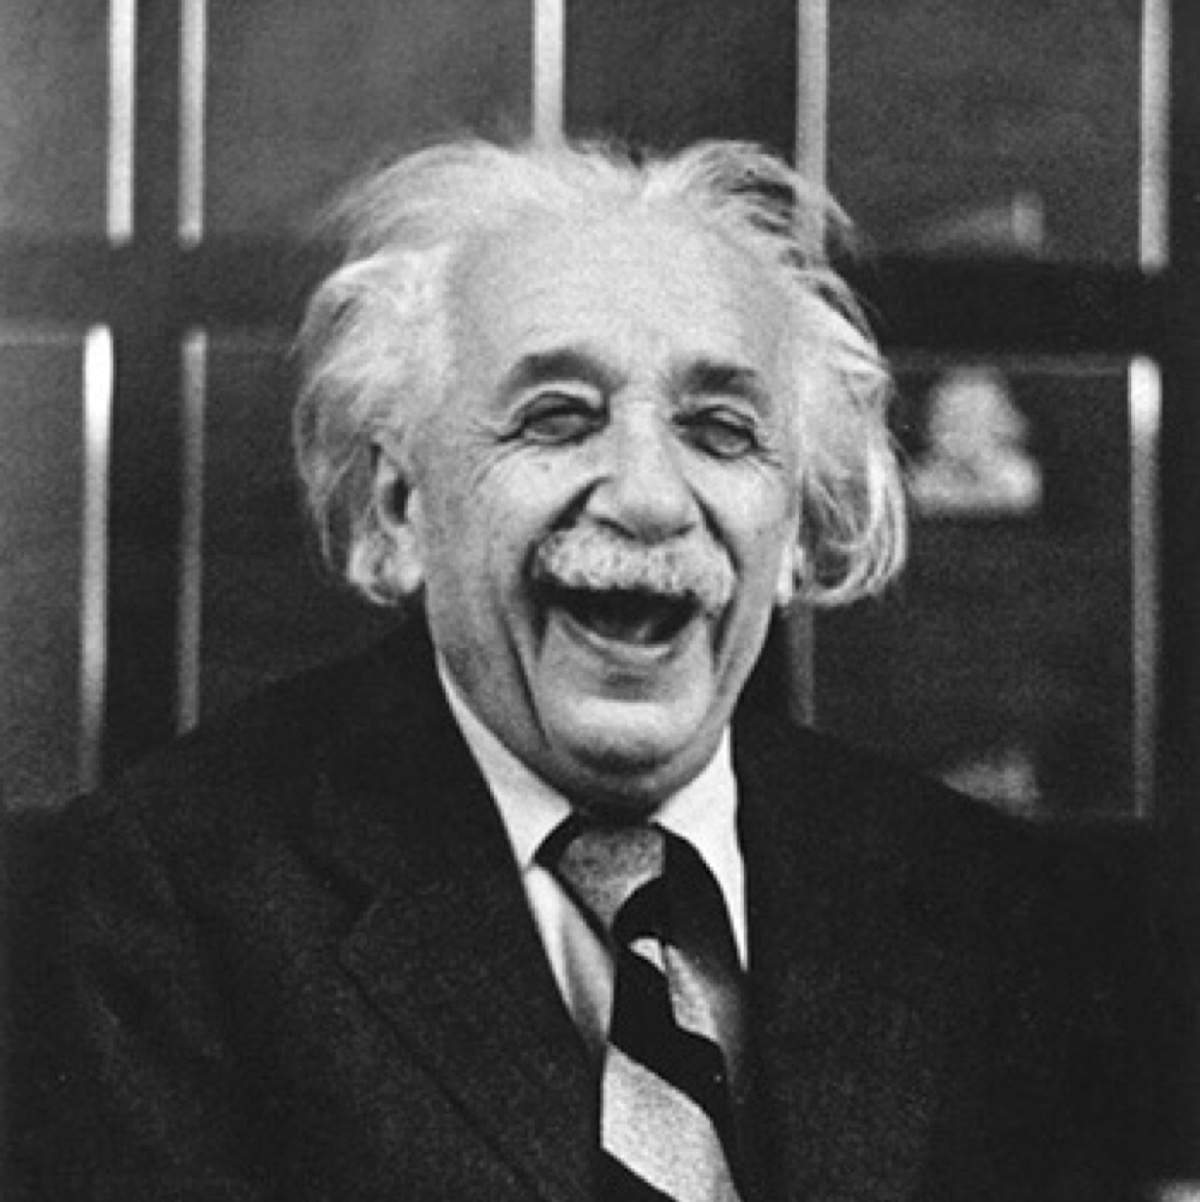 爱因斯坦 微信图片